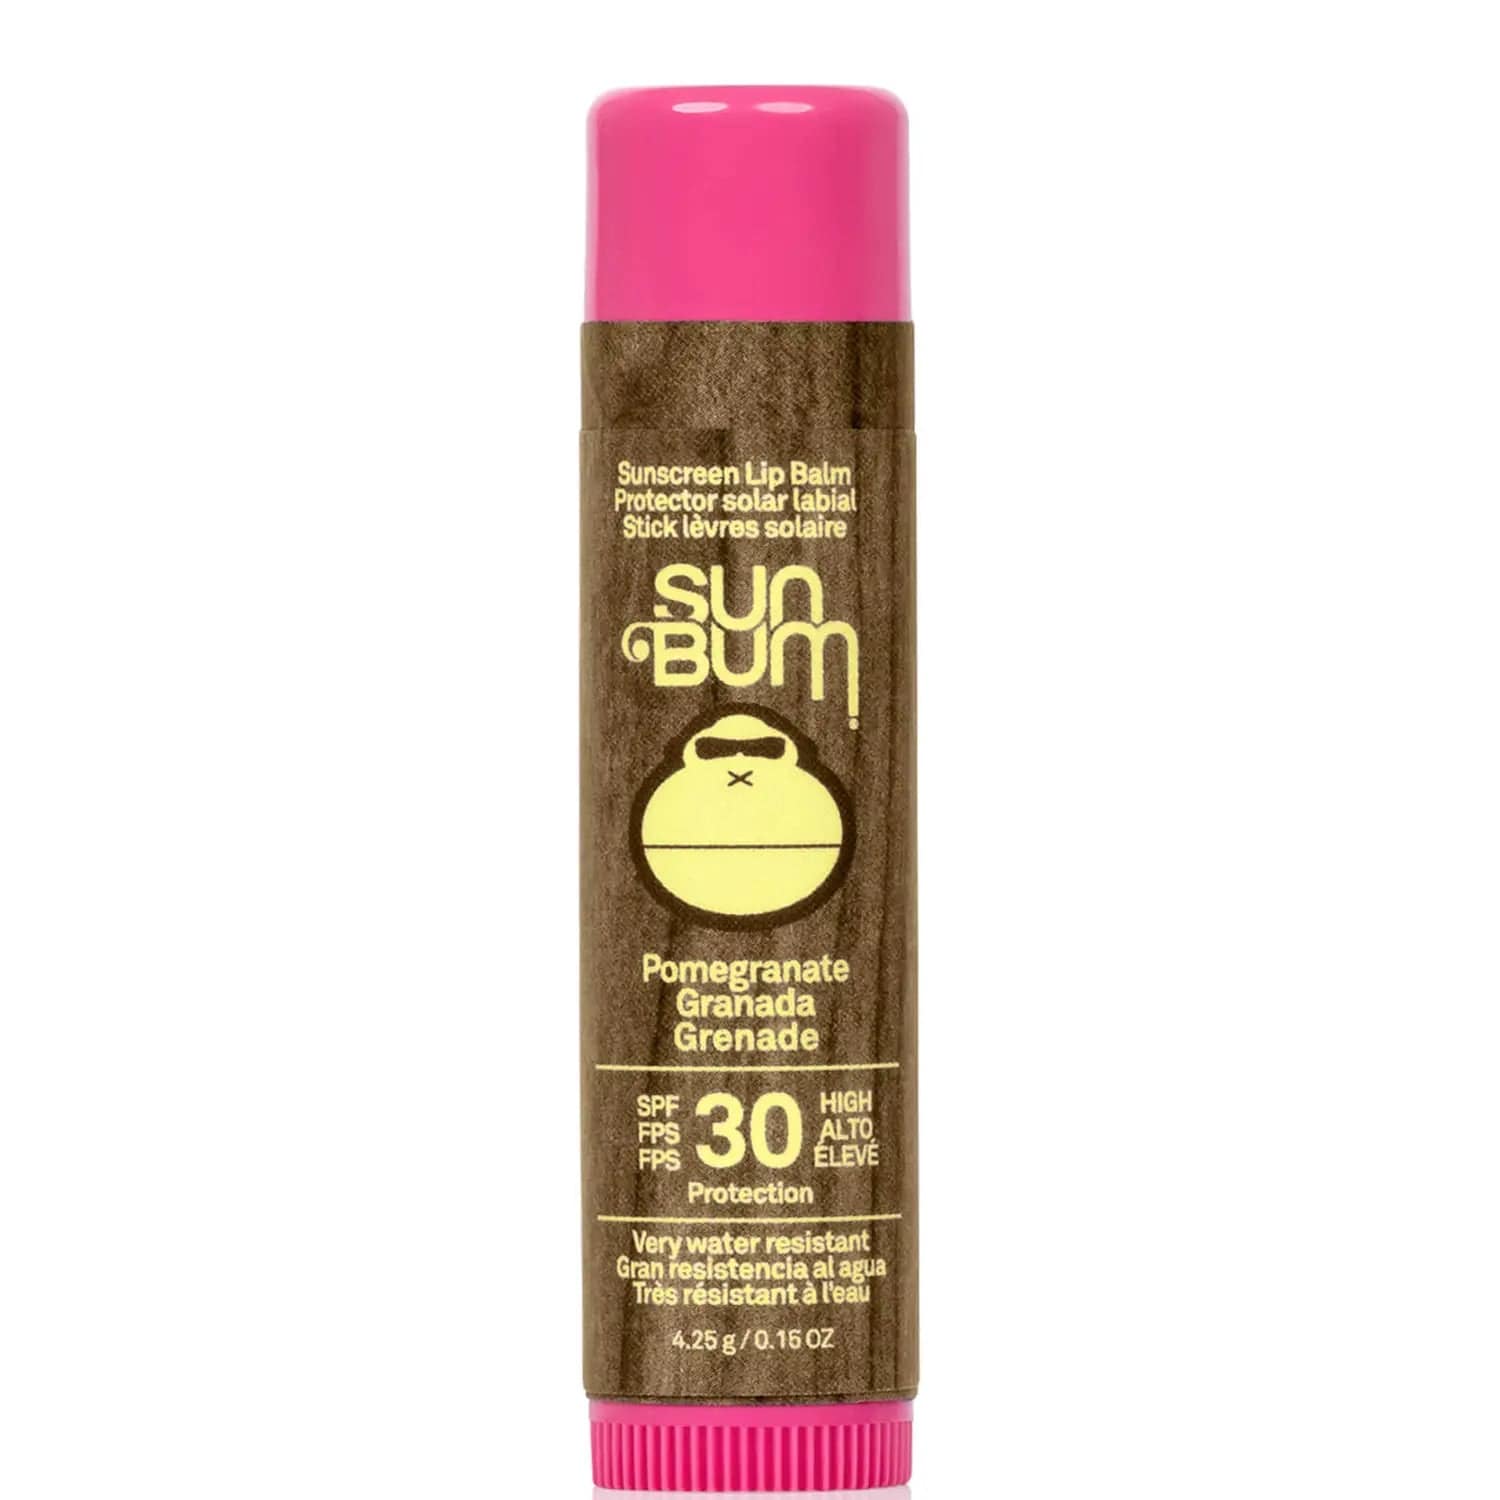 Sun Bum Original SPF30 Lip Balm Wmlon 4.25g